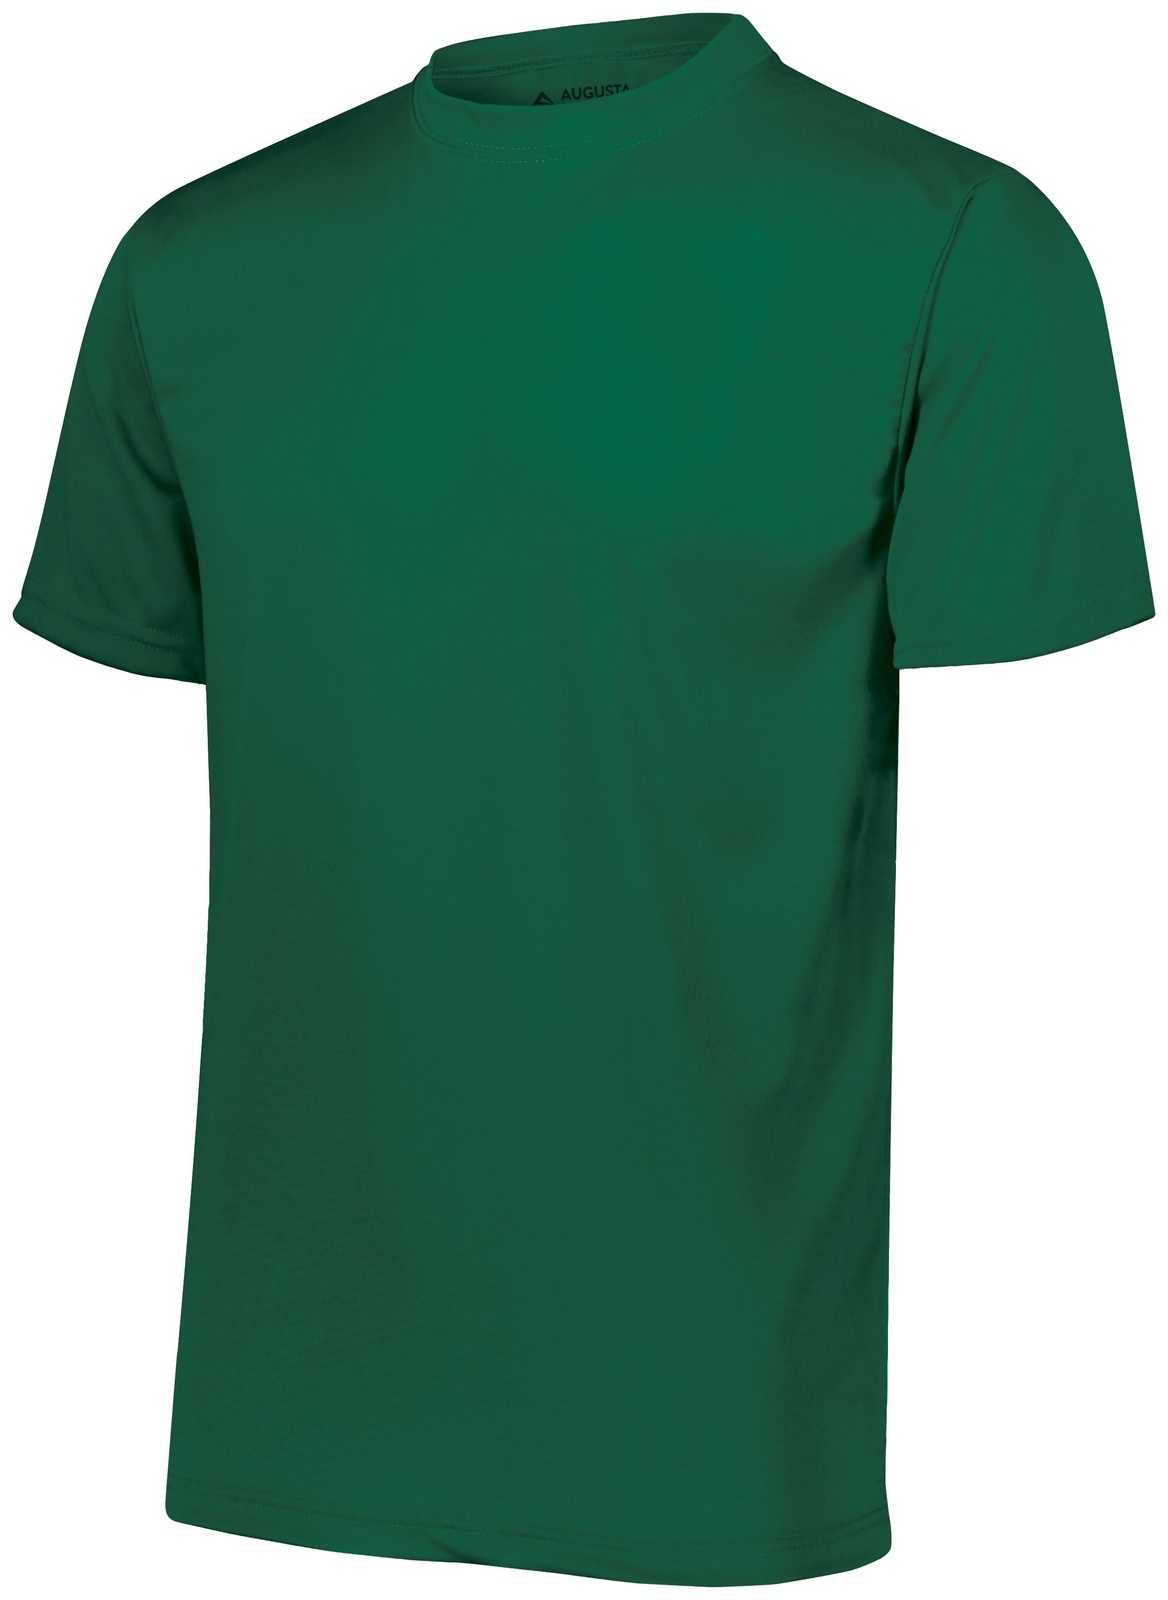 Augusta 790 NexGen Wicking T-Shirt - Dark Green - HIT a Double